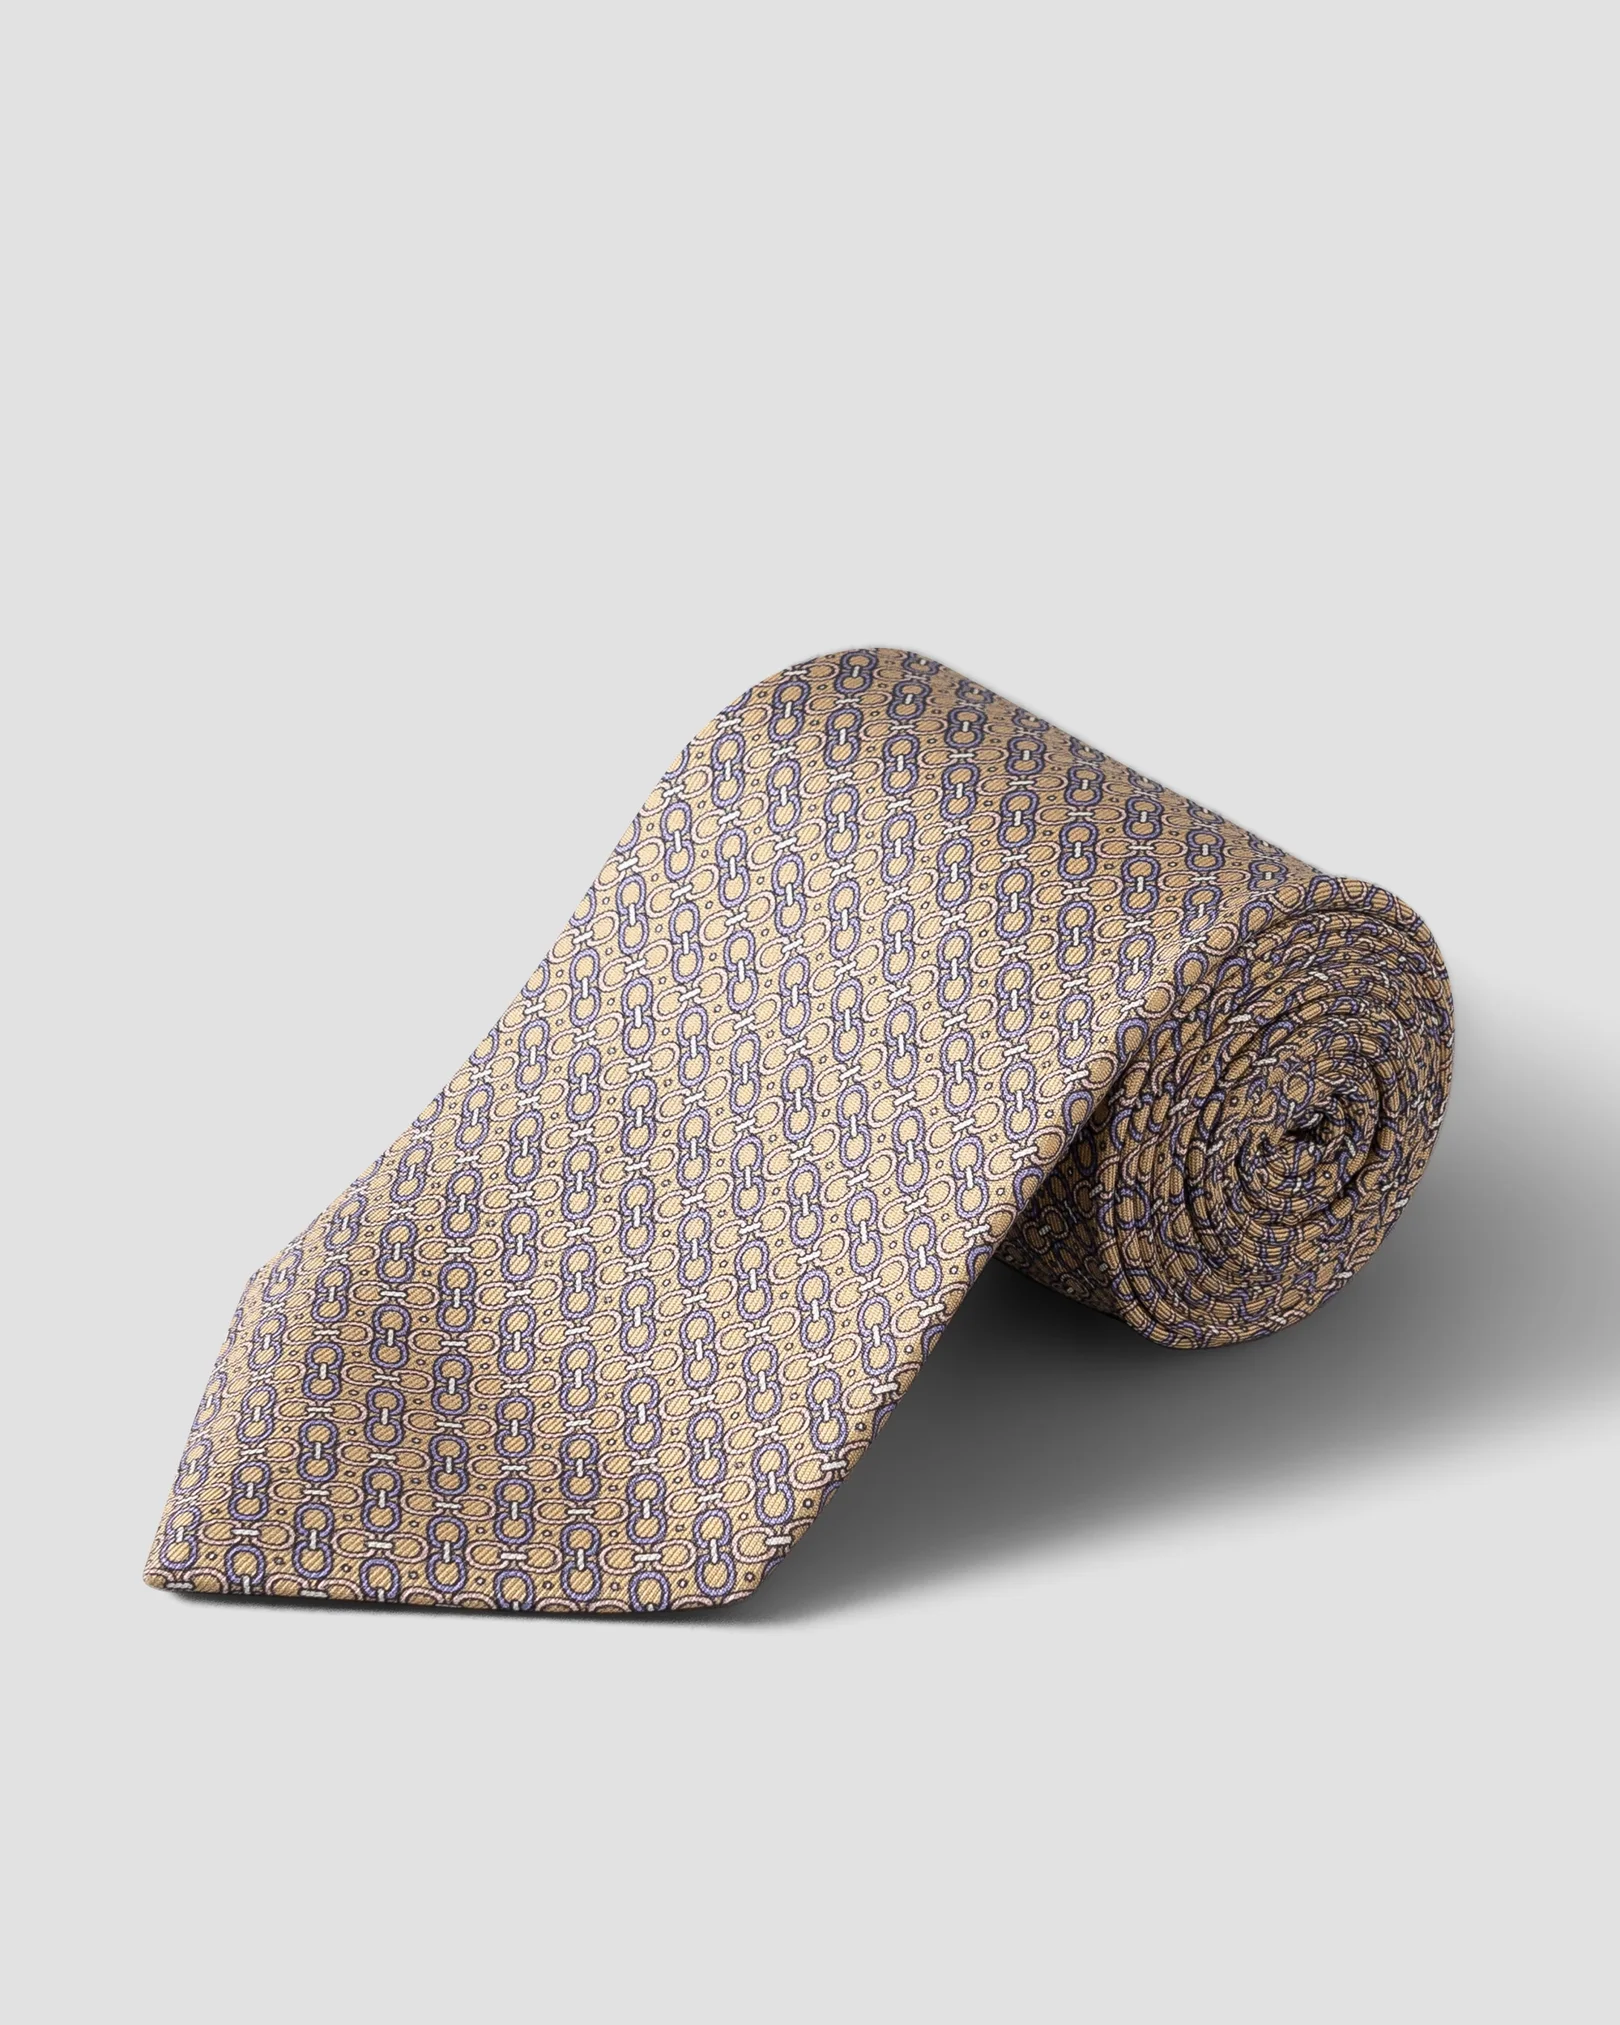 Eton - beige chain tie